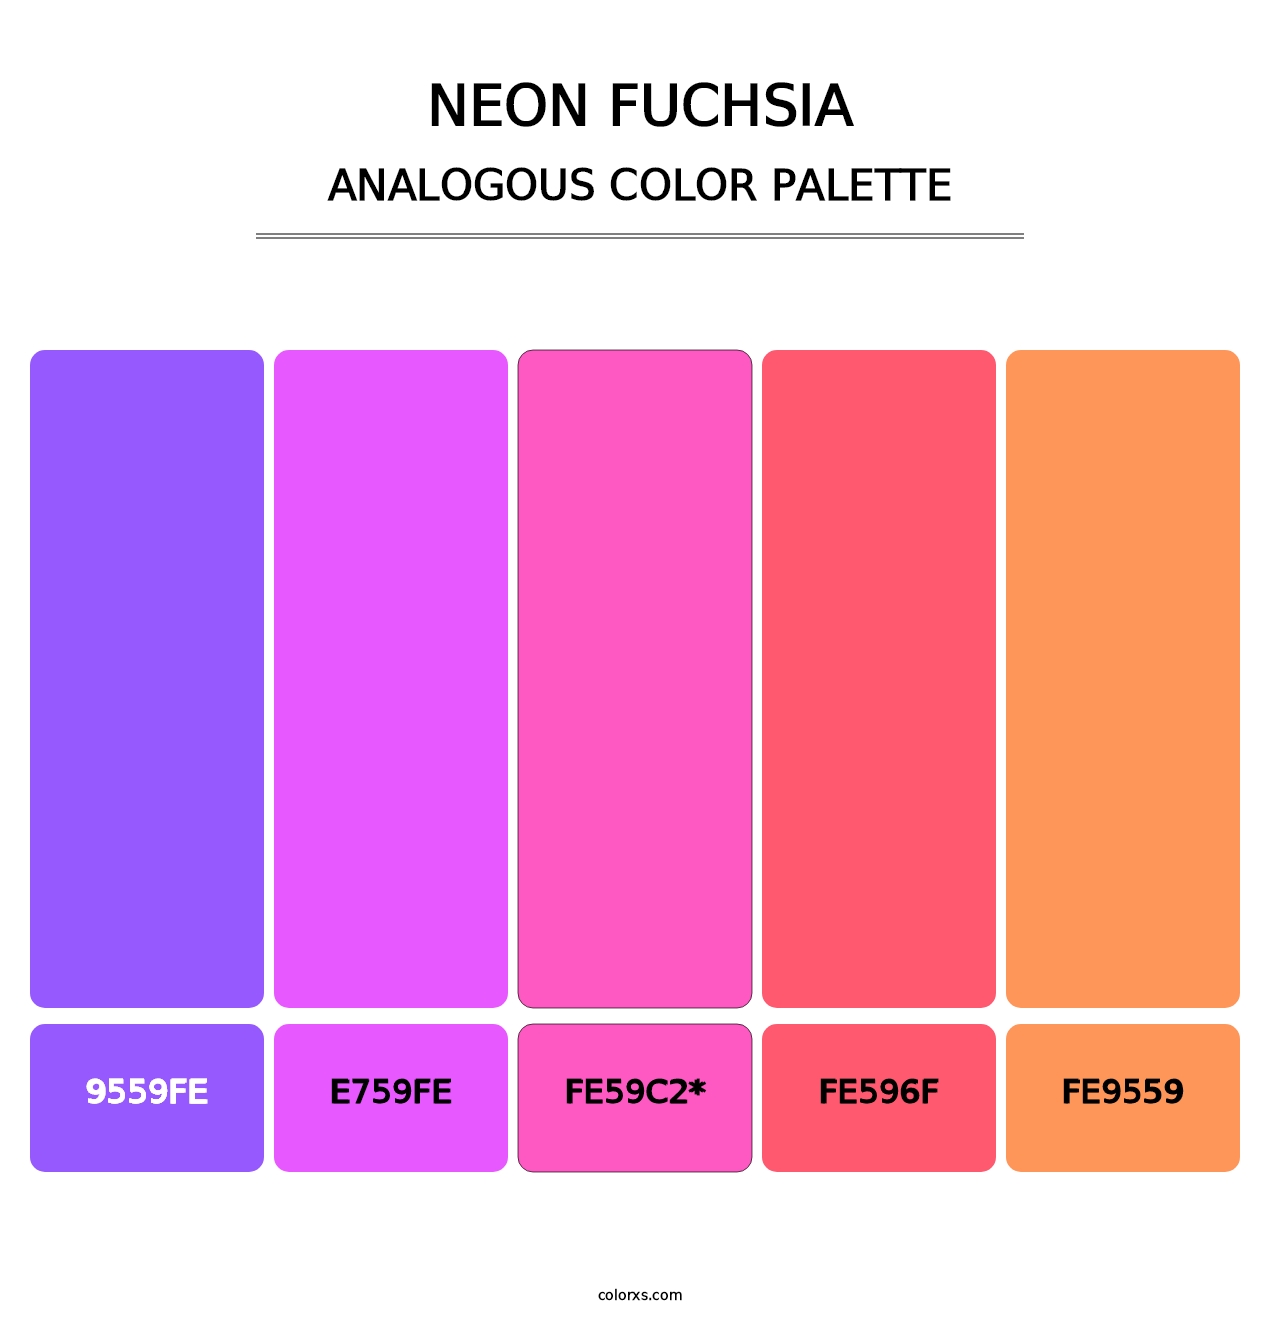 Neon Fuchsia - Analogous Color Palette